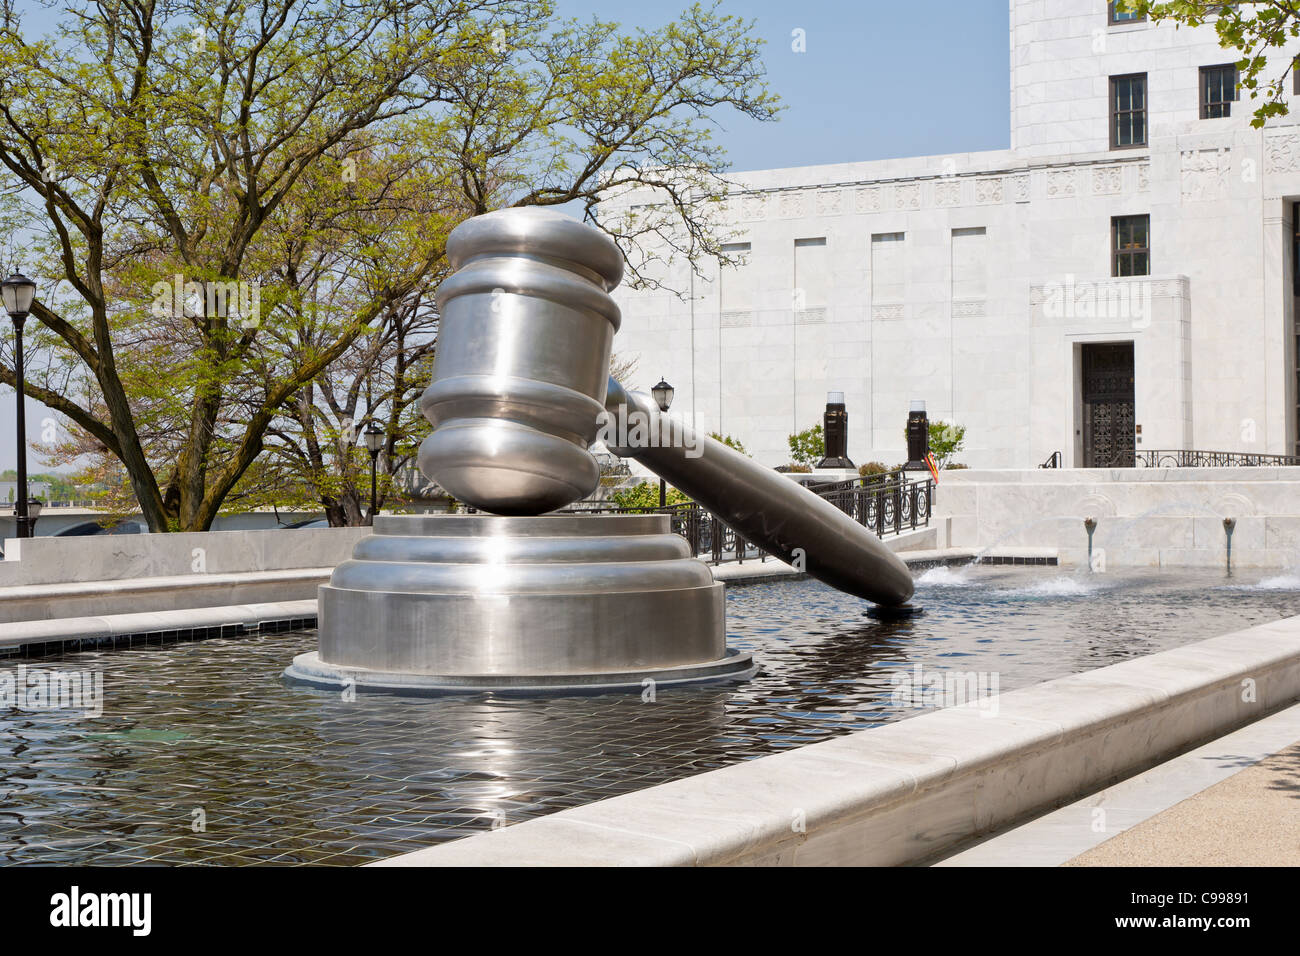 El martillo, una escultura de acero inoxidable en la piscina reflectante del Centro Judicial de Ohio en Columbus, Ohio. Foto de stock